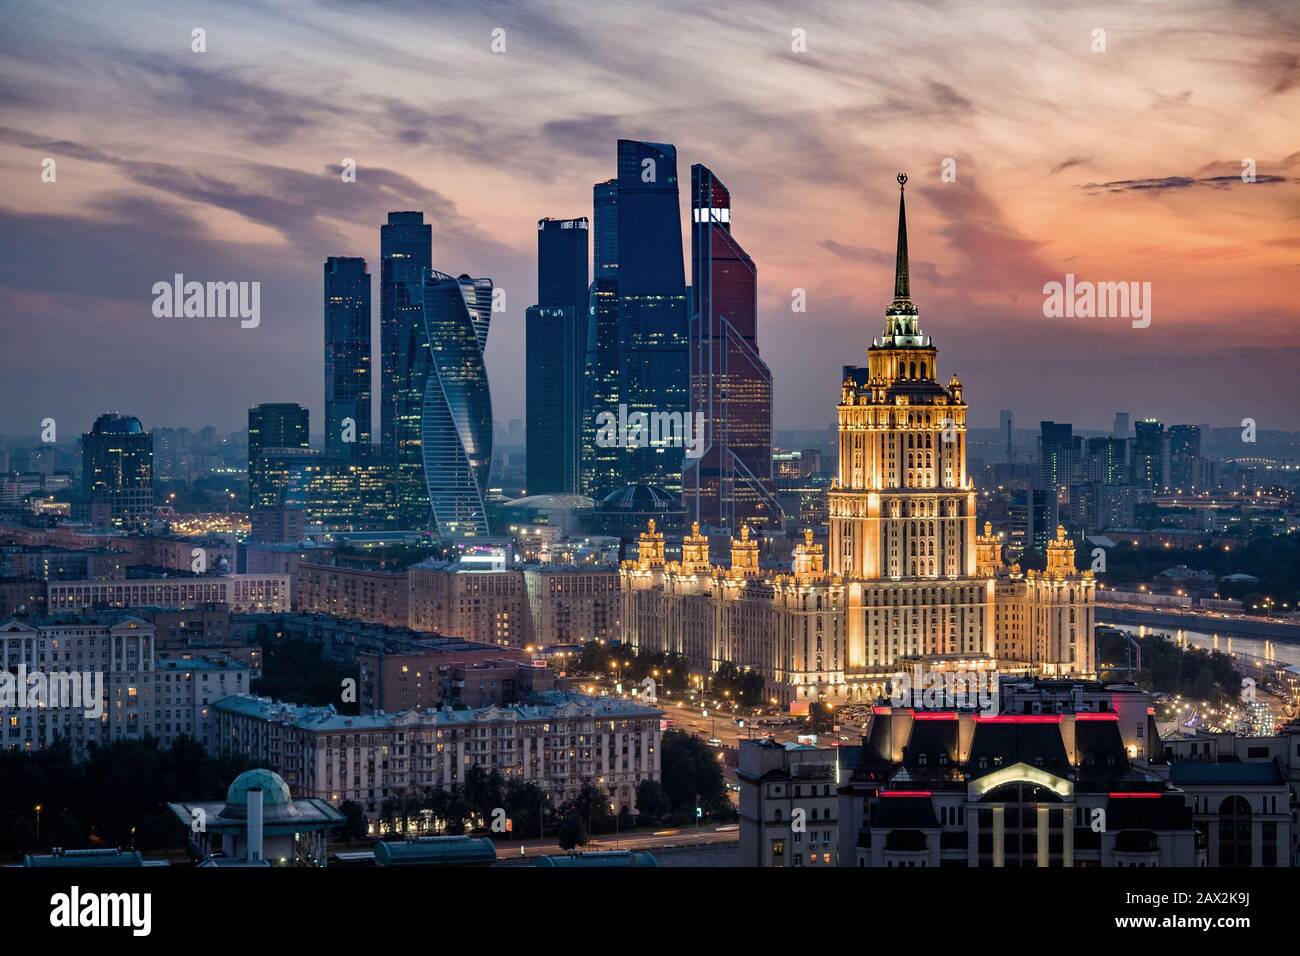 Luftaufnahme der Skyline der Stadt Moskau bei Sonnenuntergang mit architektonischen Sehenswürdigkeiten und internationalem Business Center in Moskau, Russland. Stockfoto